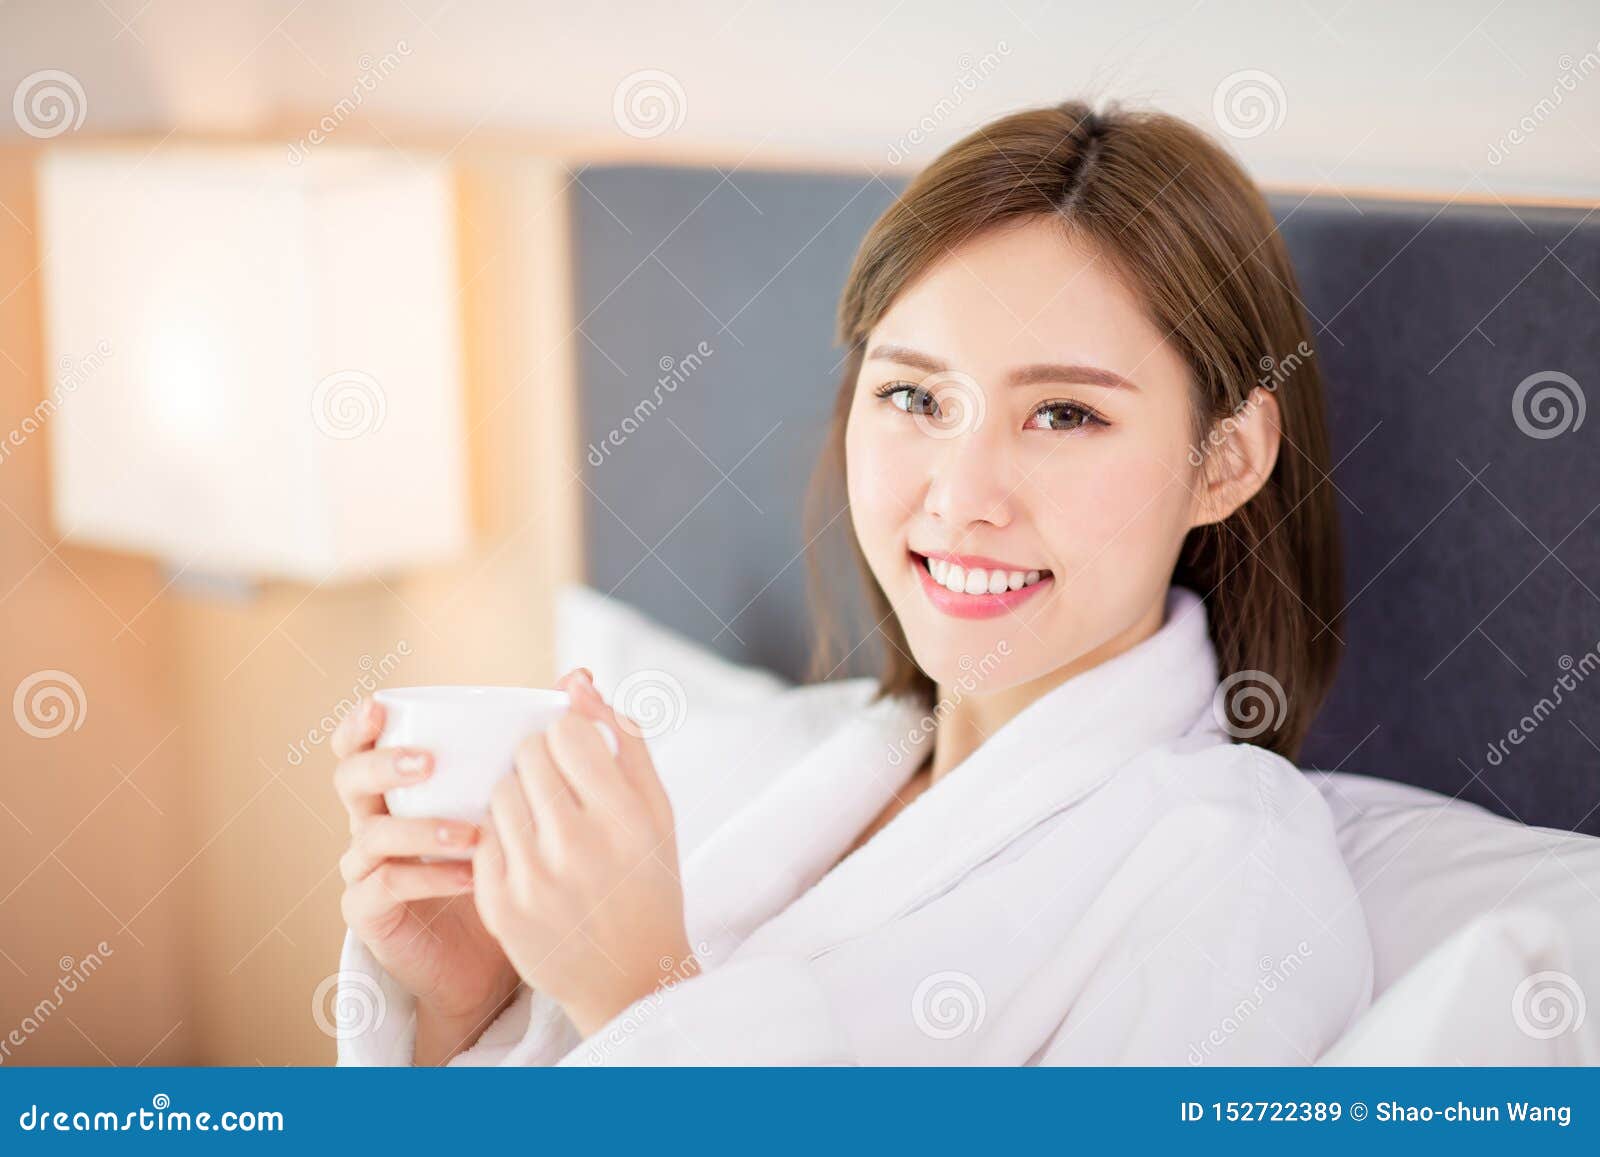 La mujer goza del café por mañana. Café asiático de la bebida de la mujer de la belleza y disfrutar de una mañana maravillosa en el hotel